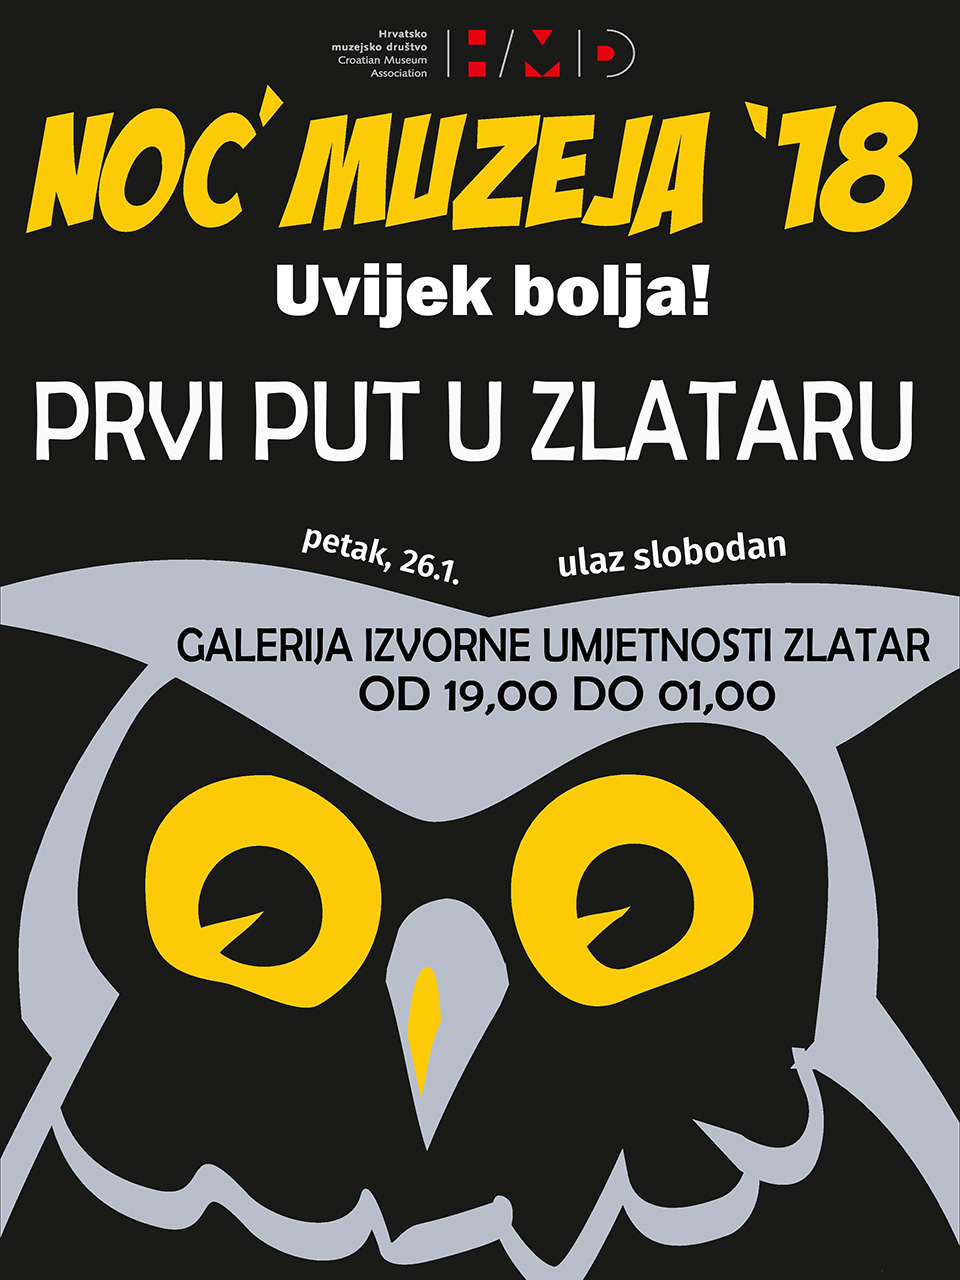 Plakat za Noć muzeja 2018. u Zlataru.